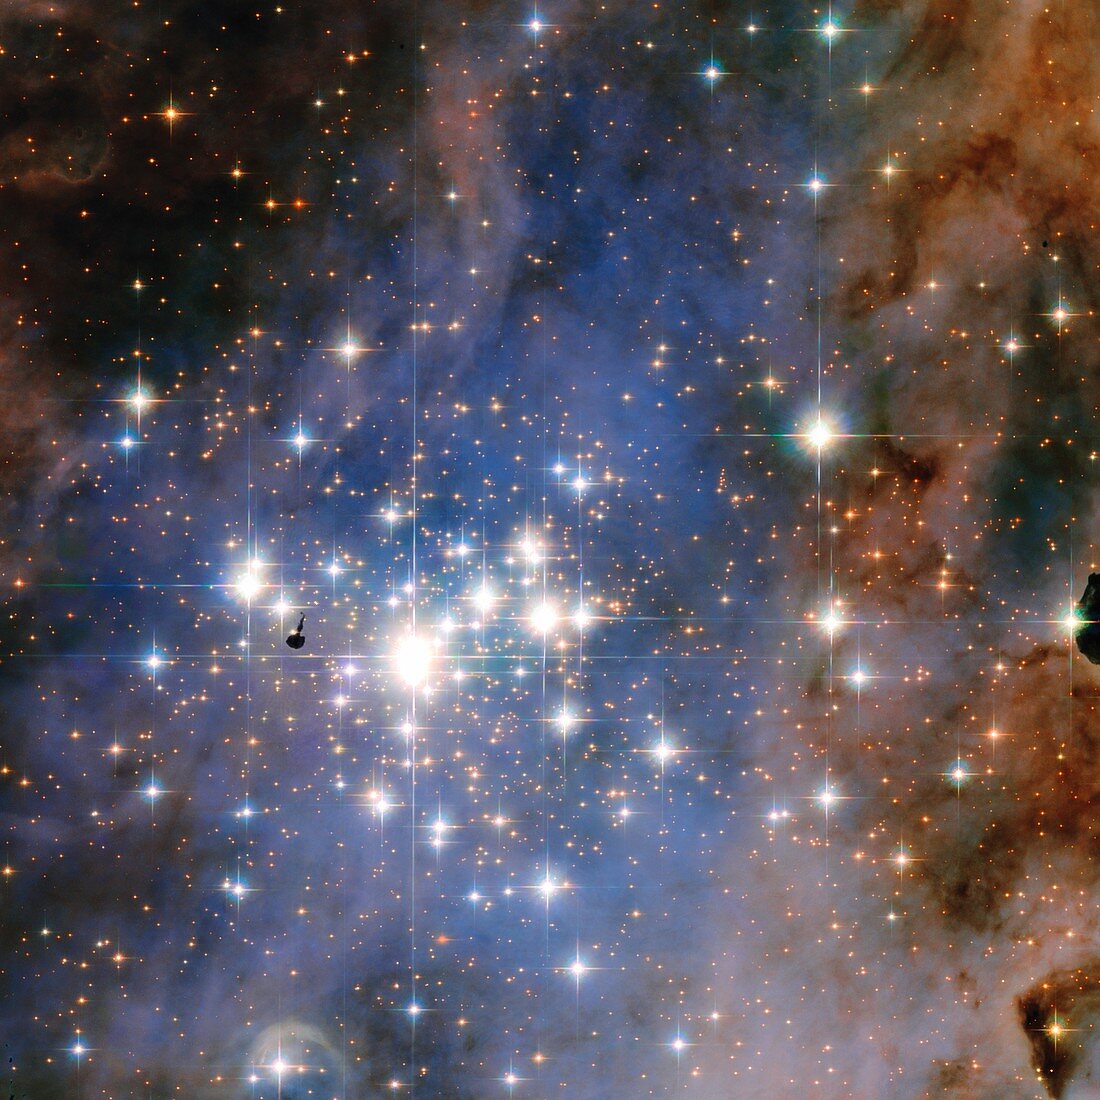 Trumpler 14 star cluster,HST image